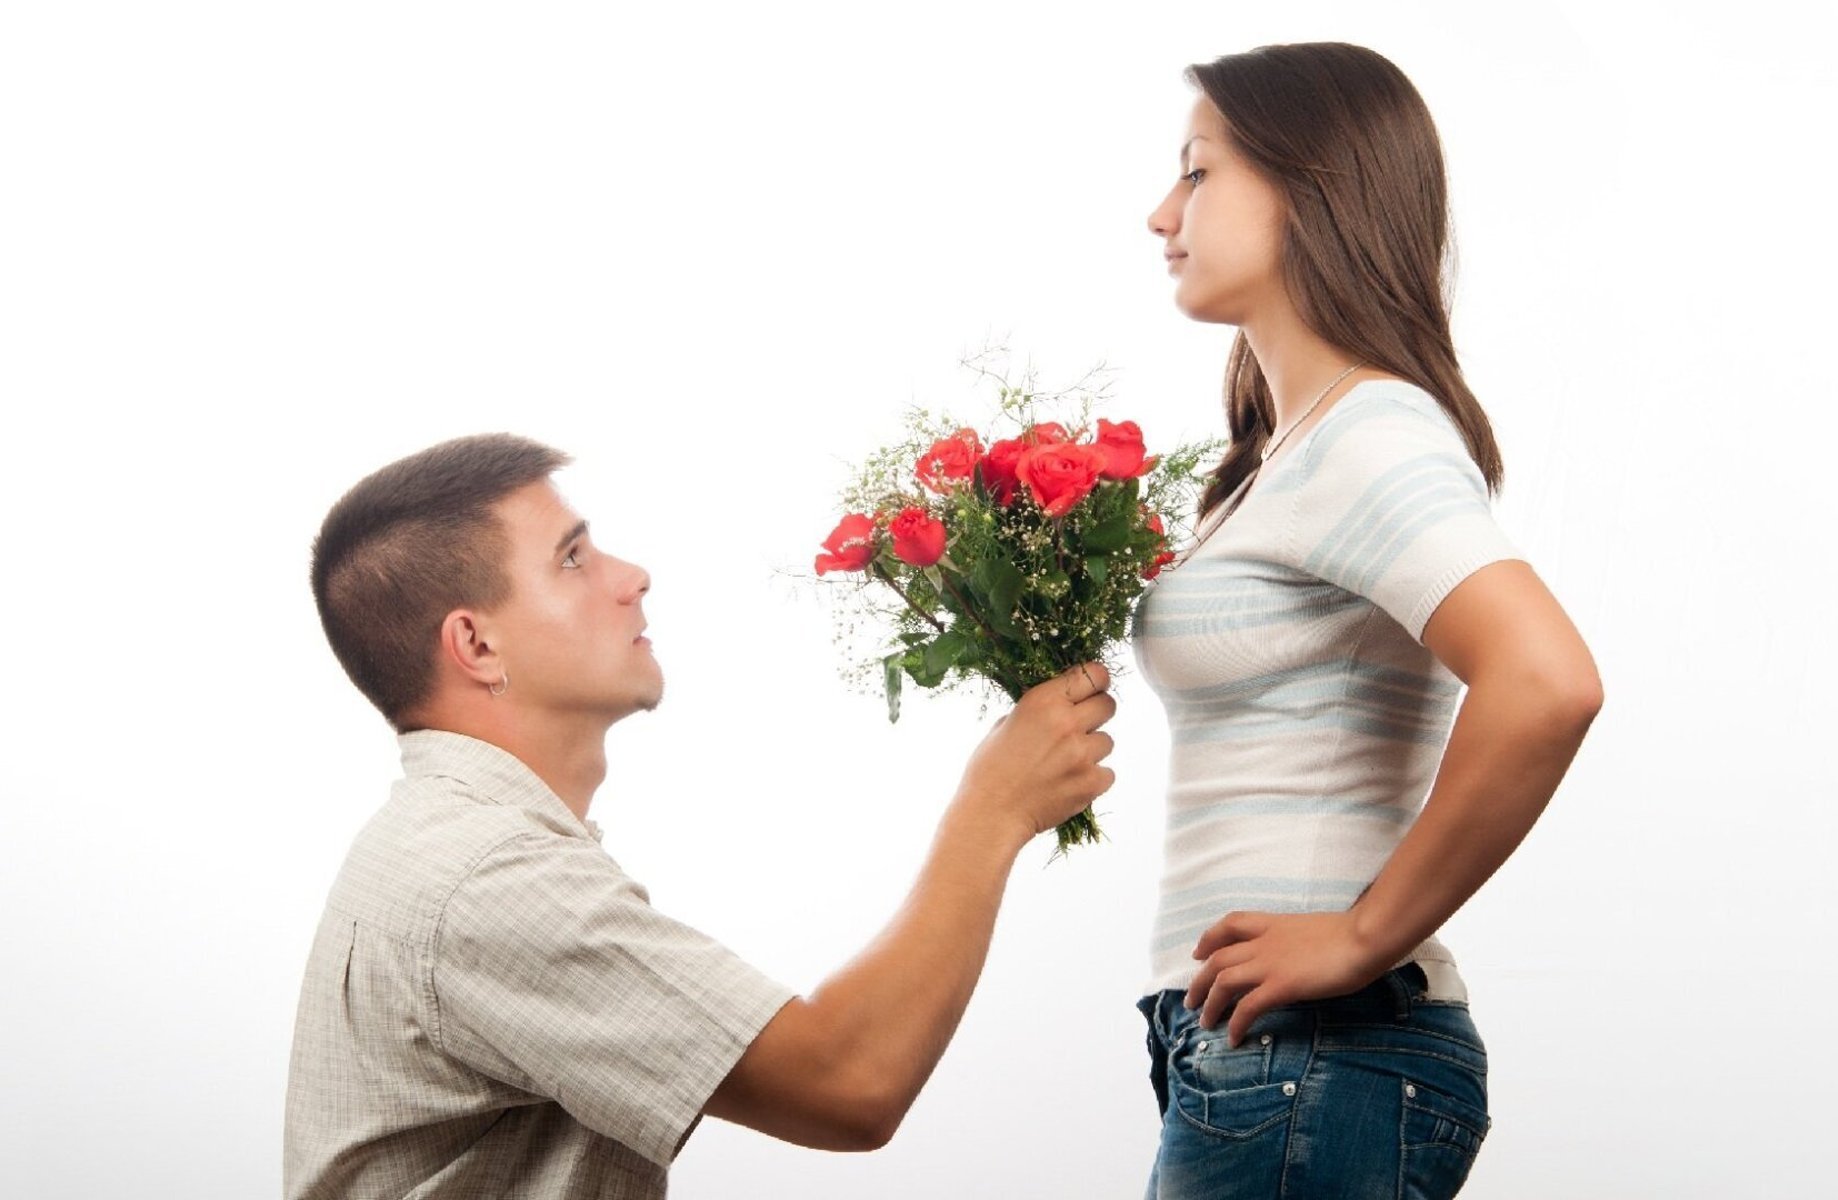 Как попросить цветы. Парень даритдеаушке цветы. Парень дарит девушке цветы. Девушке дарят цветы. Мужчина дарит цветы женщине.